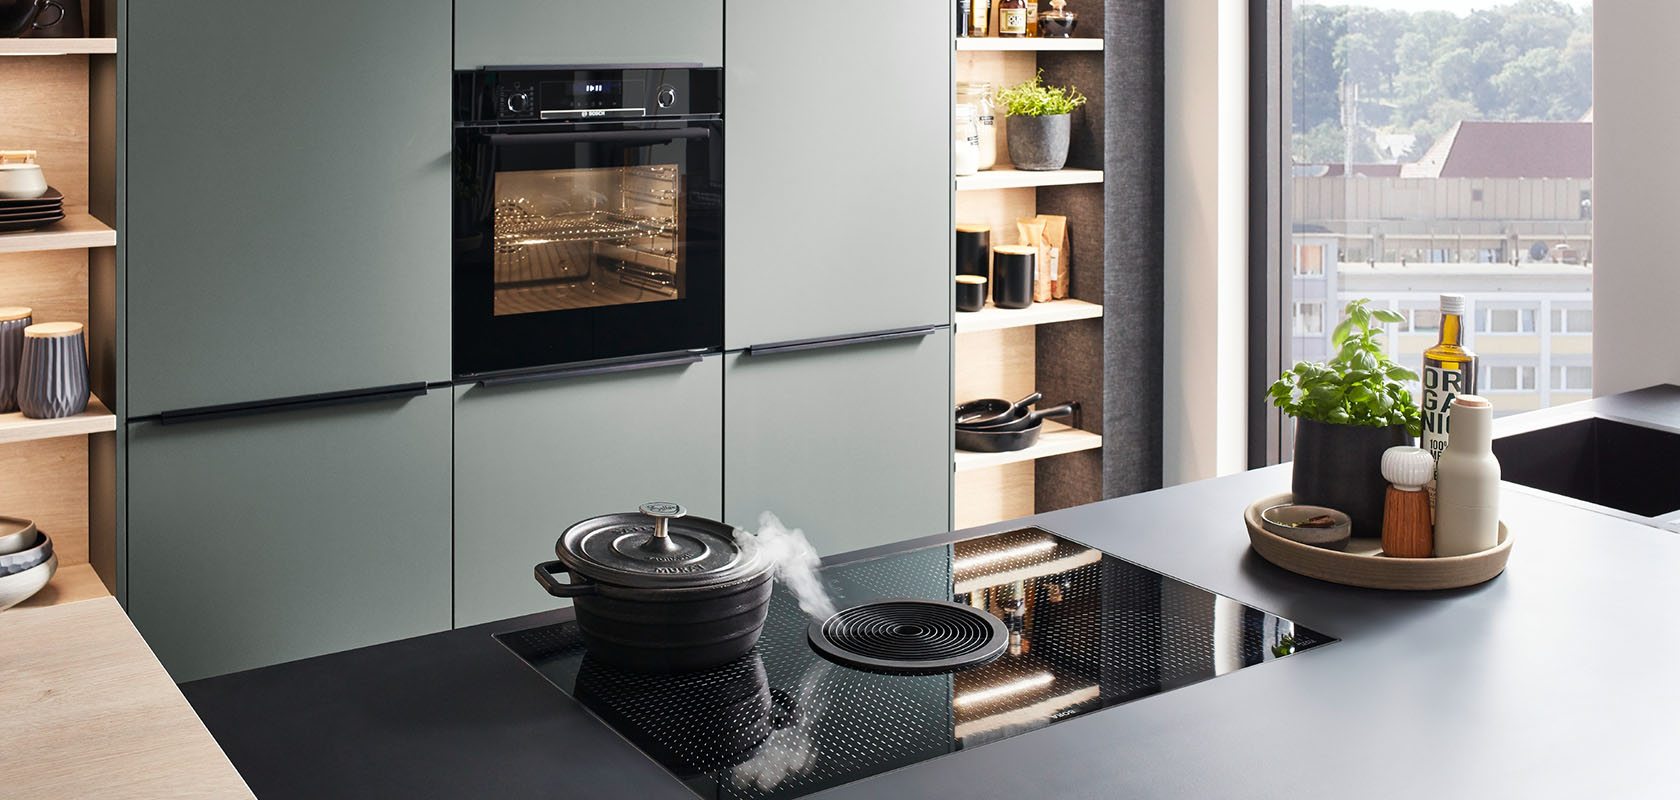 Moderne Kücheninnenräume mit eleganten grünen Schränken, integrierten Geräten und einem Induktionskochfeld auf einer dunklen Arbeitsplatte, die zeitgenössischen Stil und Funktionalität ausstrahlen.